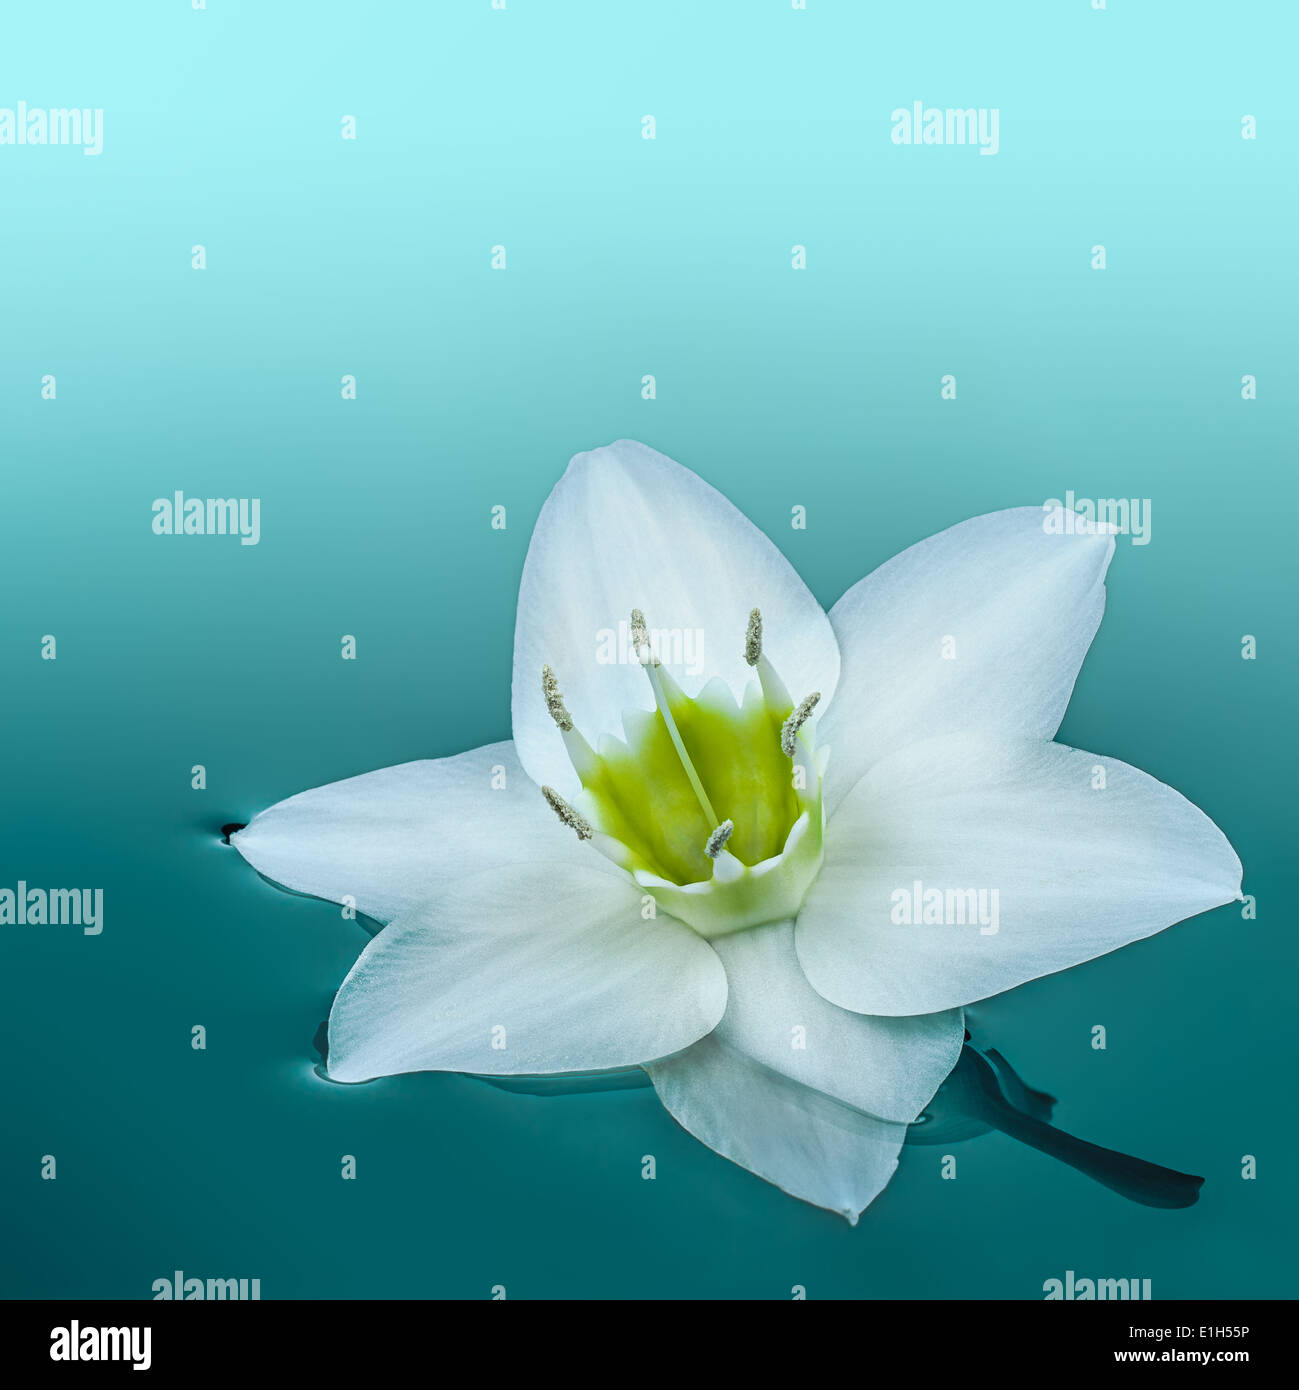 Amazon lily flower blanc voguant sur l'eau turquoise Banque D'Images